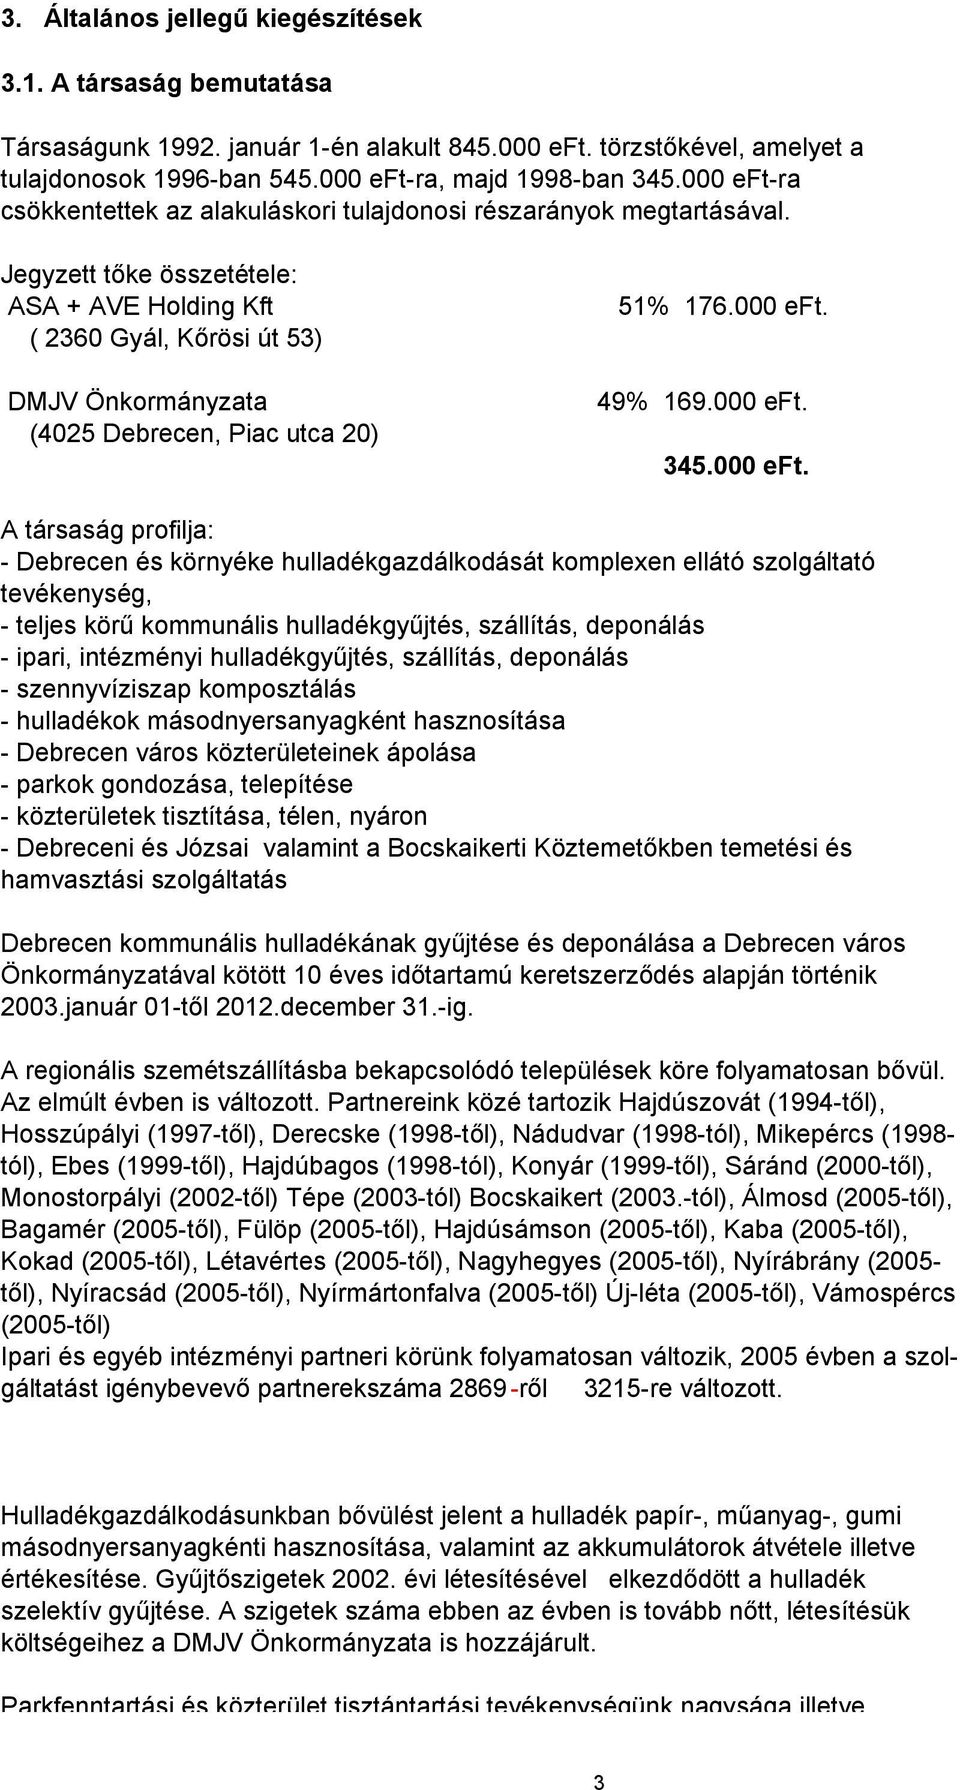 Jegyzett tőke összetétele: ASA + AVE Holding Kft ( 236 Gyál, Kőrösi út 53) DMJV Önkormányzata (425 Debrecen, Piac utca 2) 51% 176. eft.